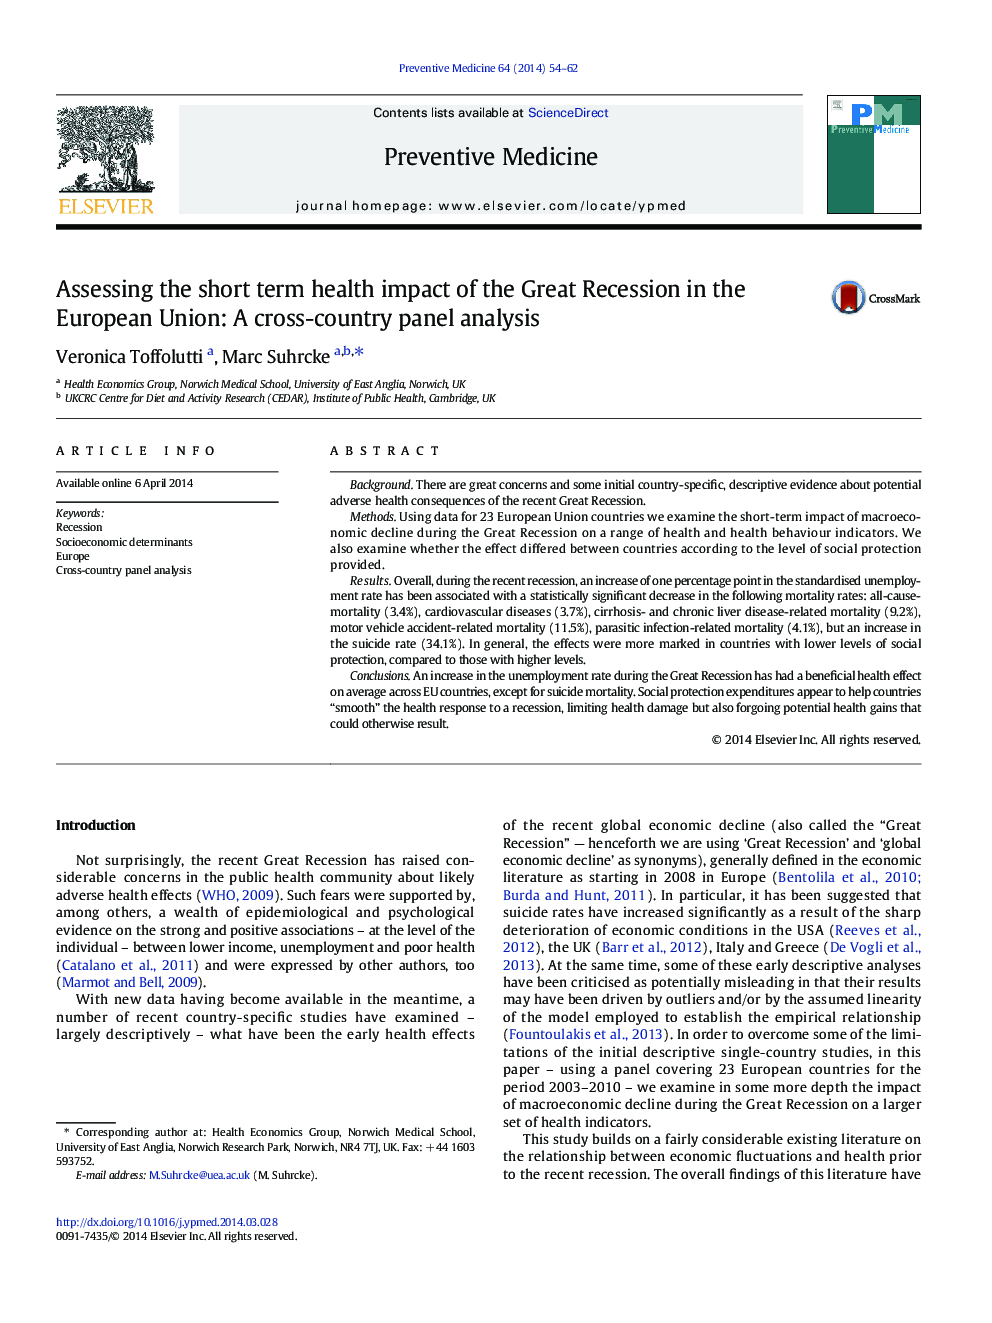 ارزیابی تأثیرات کوتاه مدت بهداشتی رکود اقتصادی در اتحادیه اروپا: تجزیه و تحلیل پانل متقابل کشور 